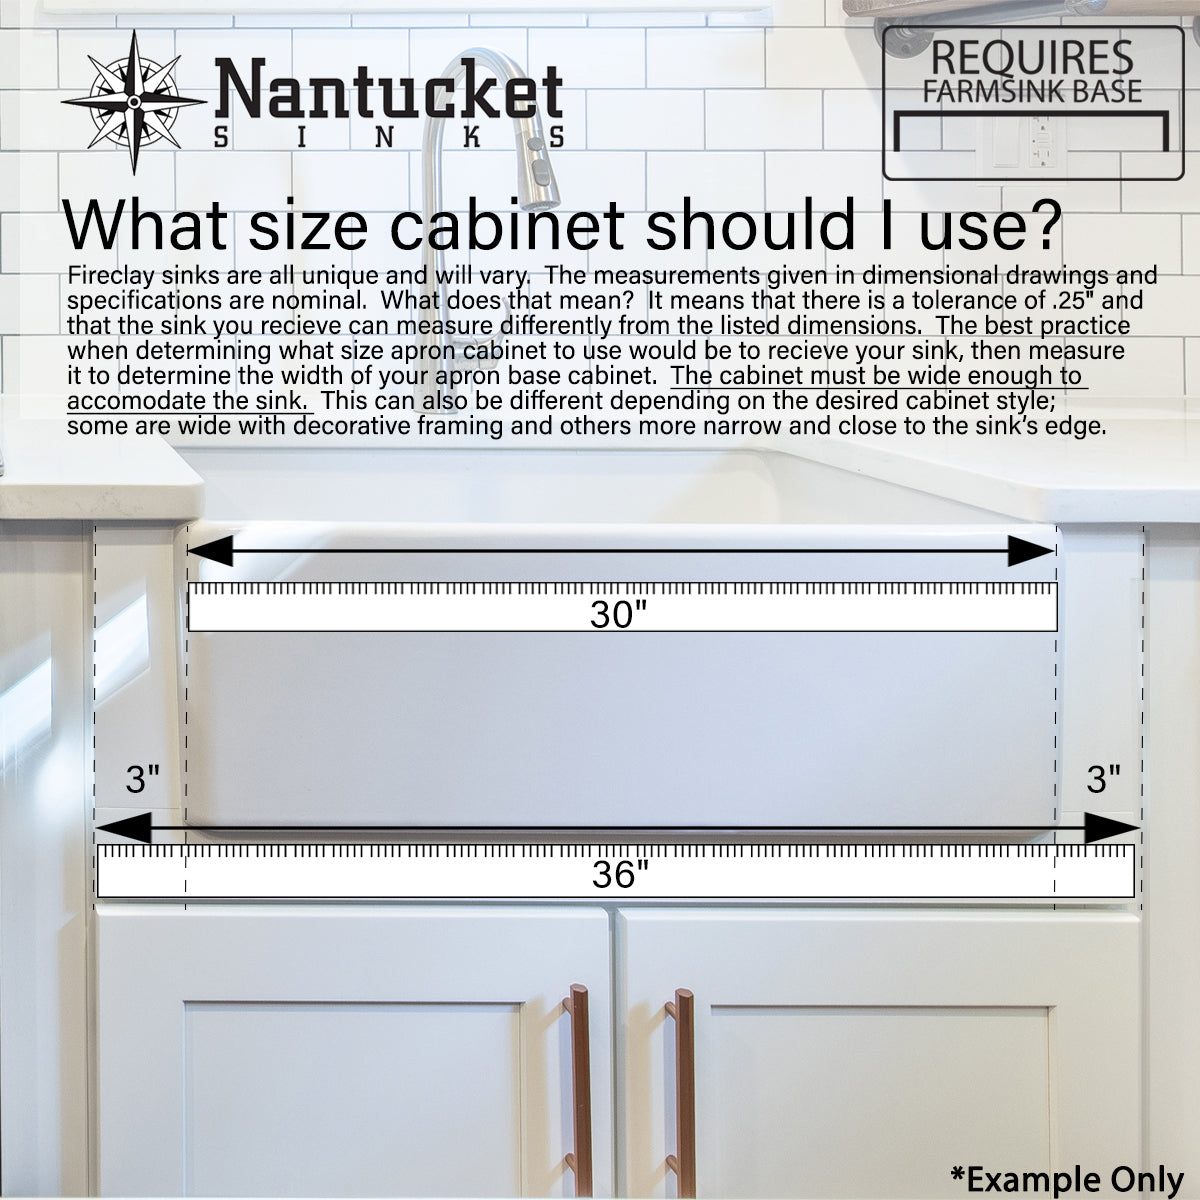 Nantucket Sinks 36 Inch Italian Farmhouse Fireclay Sink with Built-In Drainboard